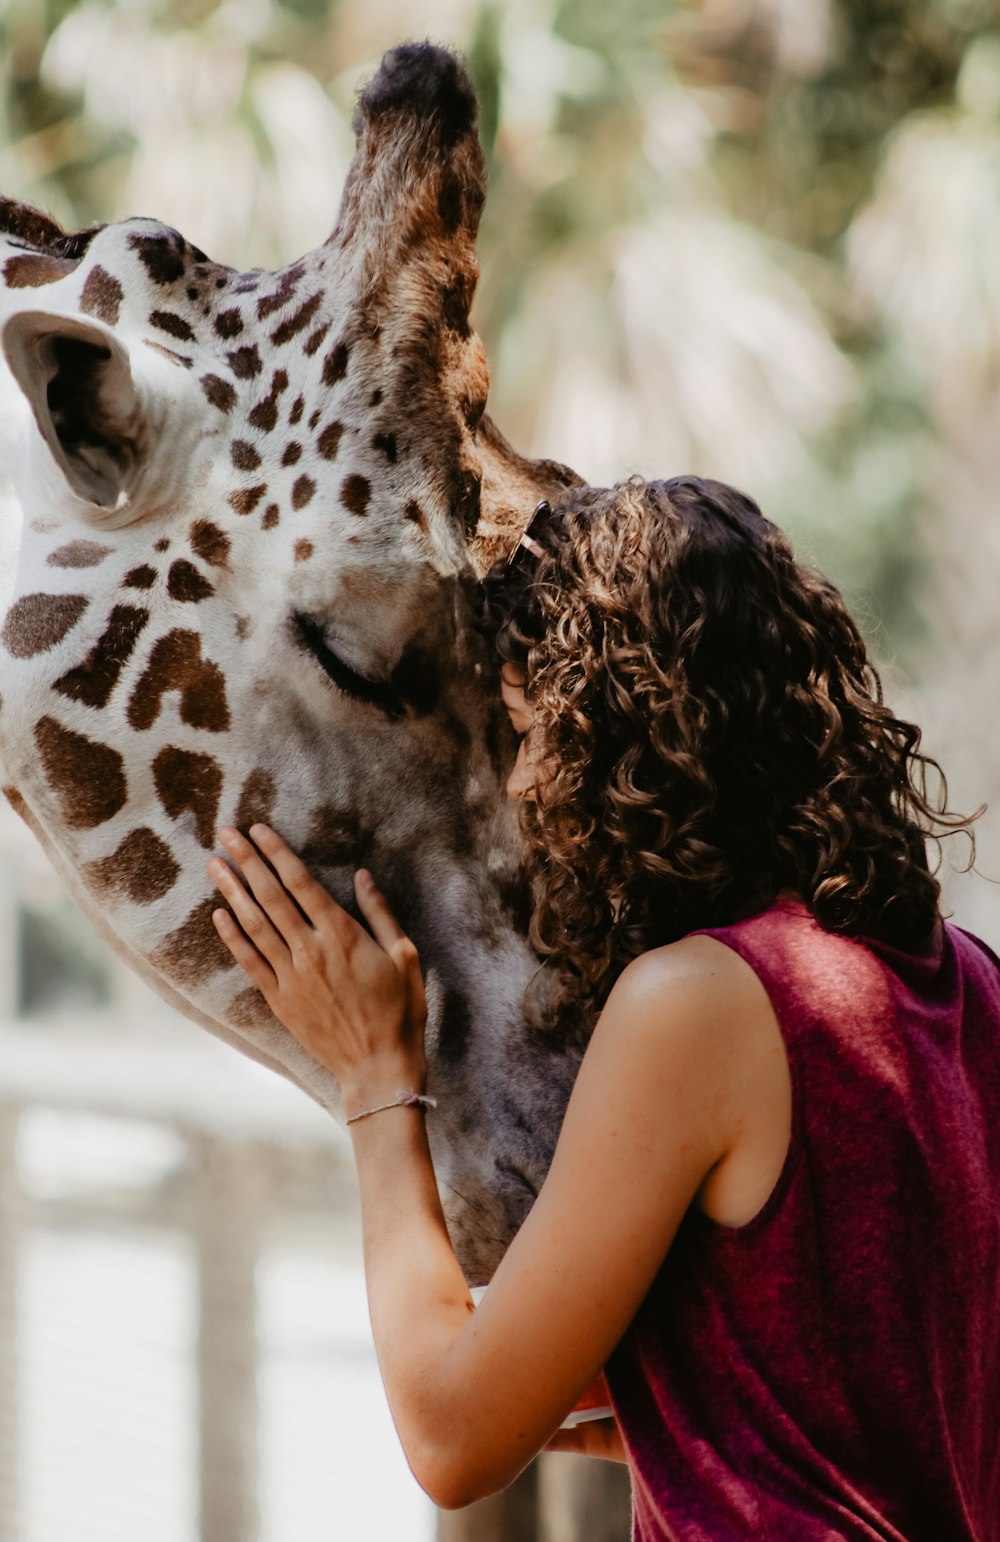 photographie en perspective forcée d’une femme étreignant une girafe